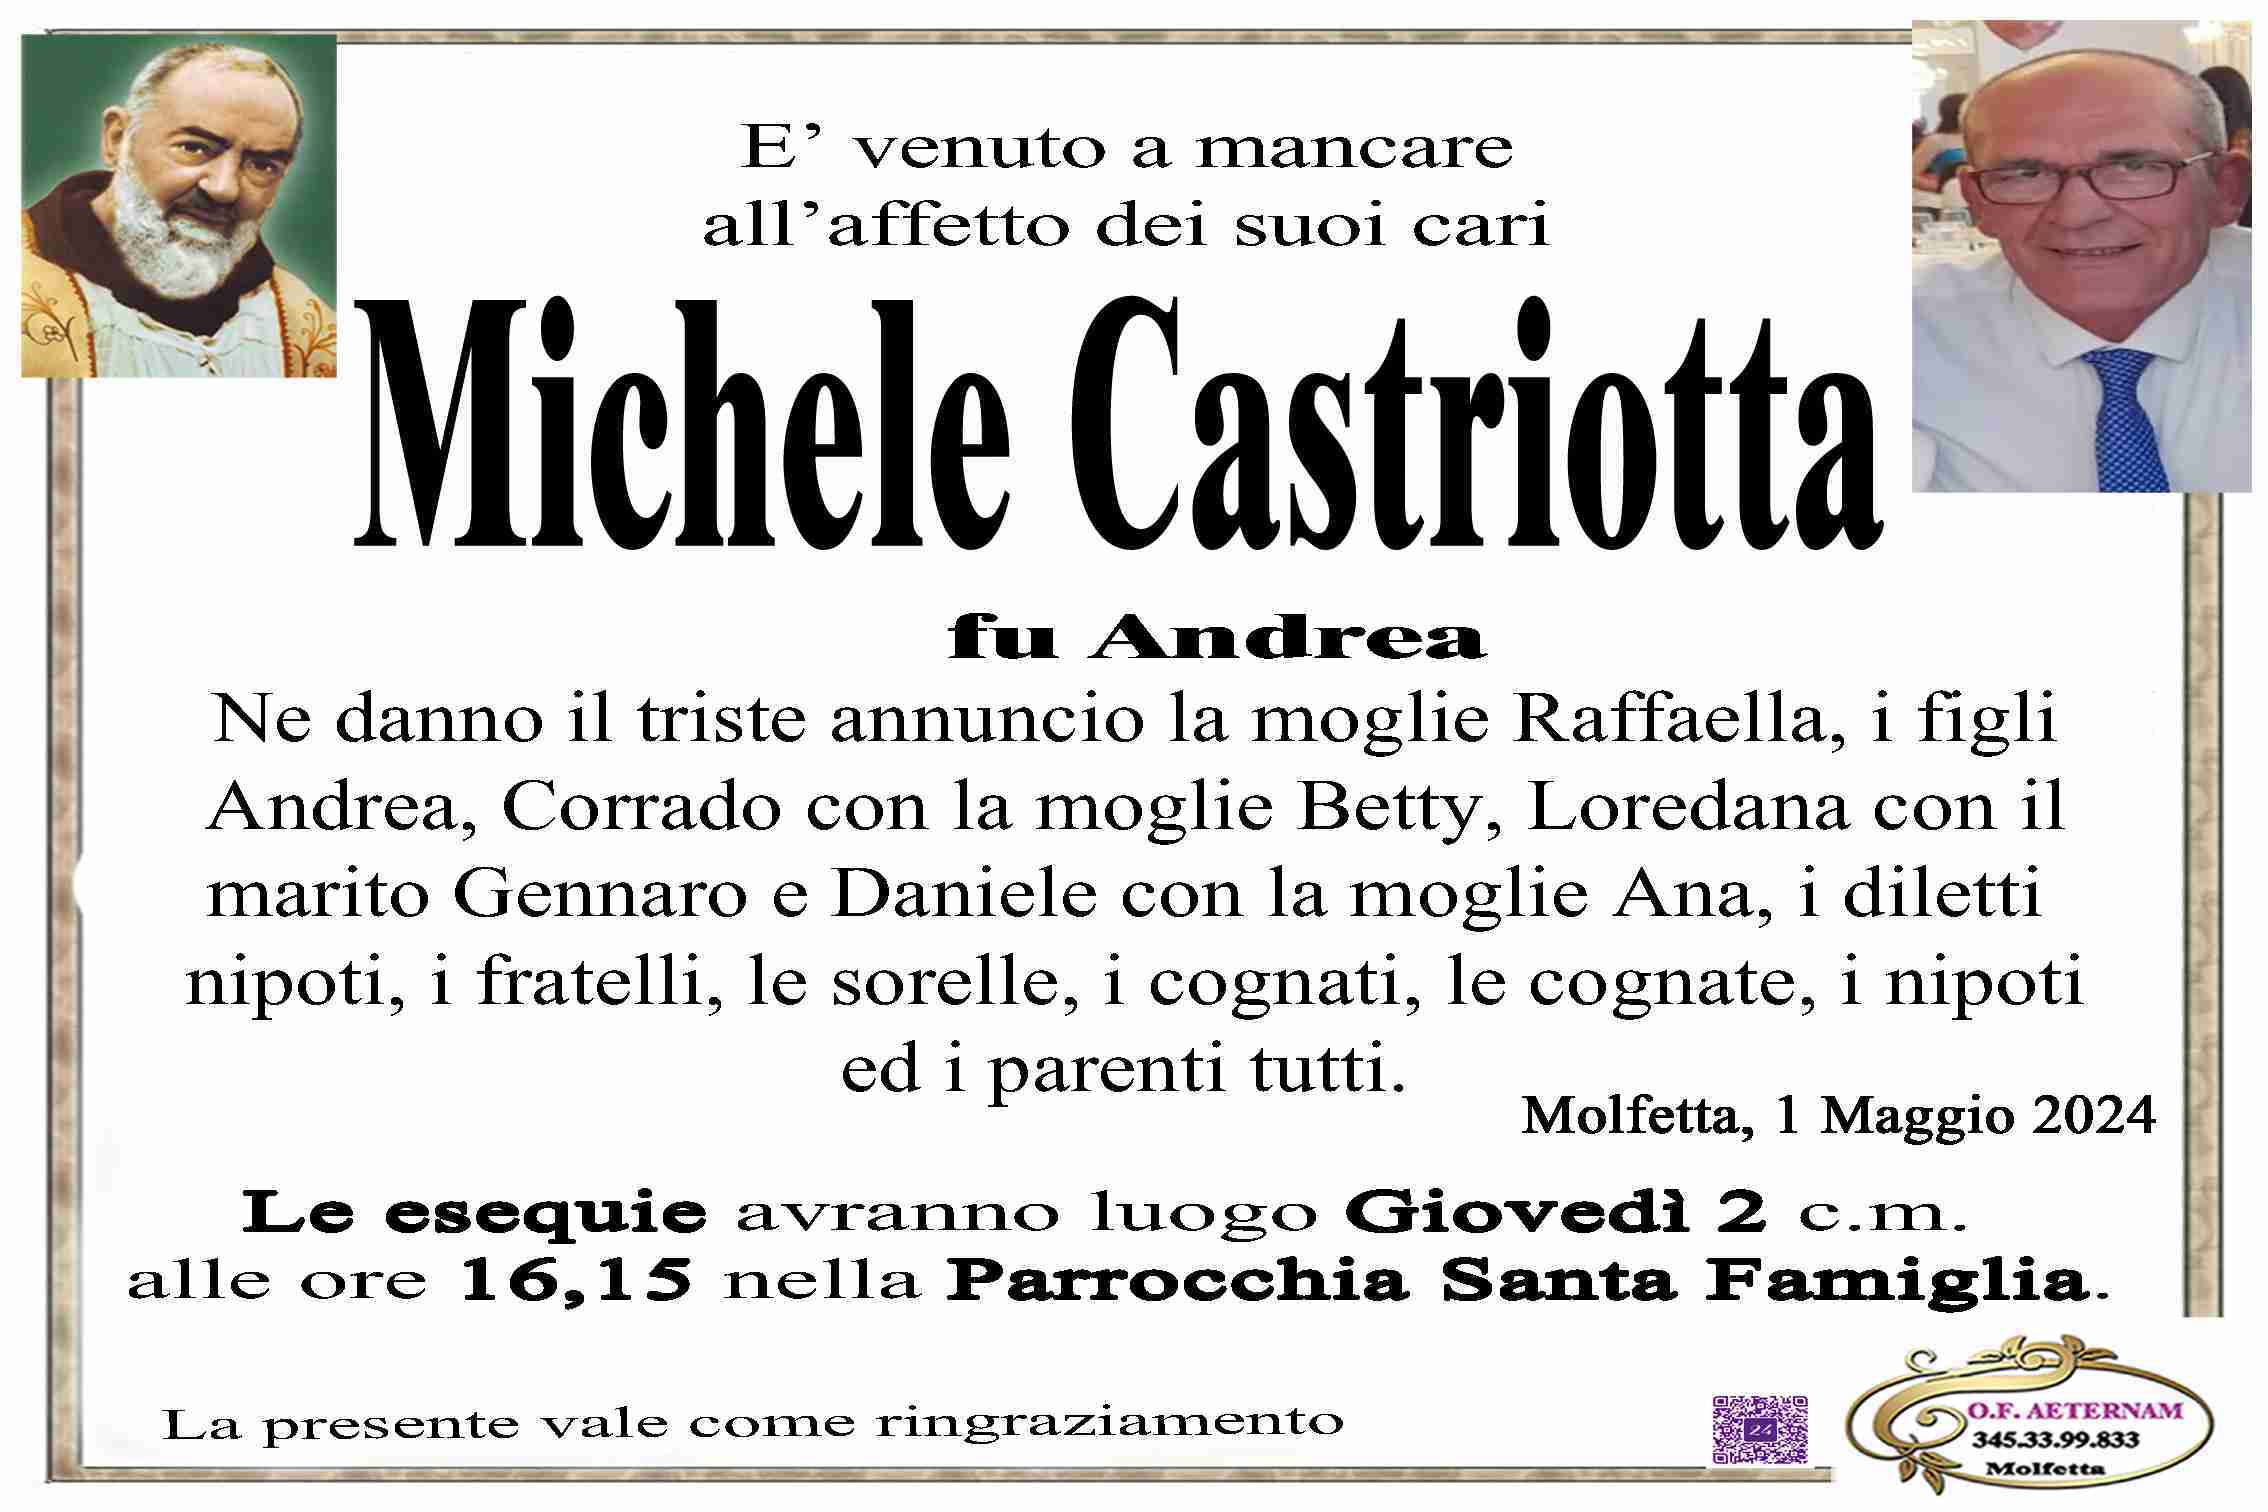 Michele Castriotta